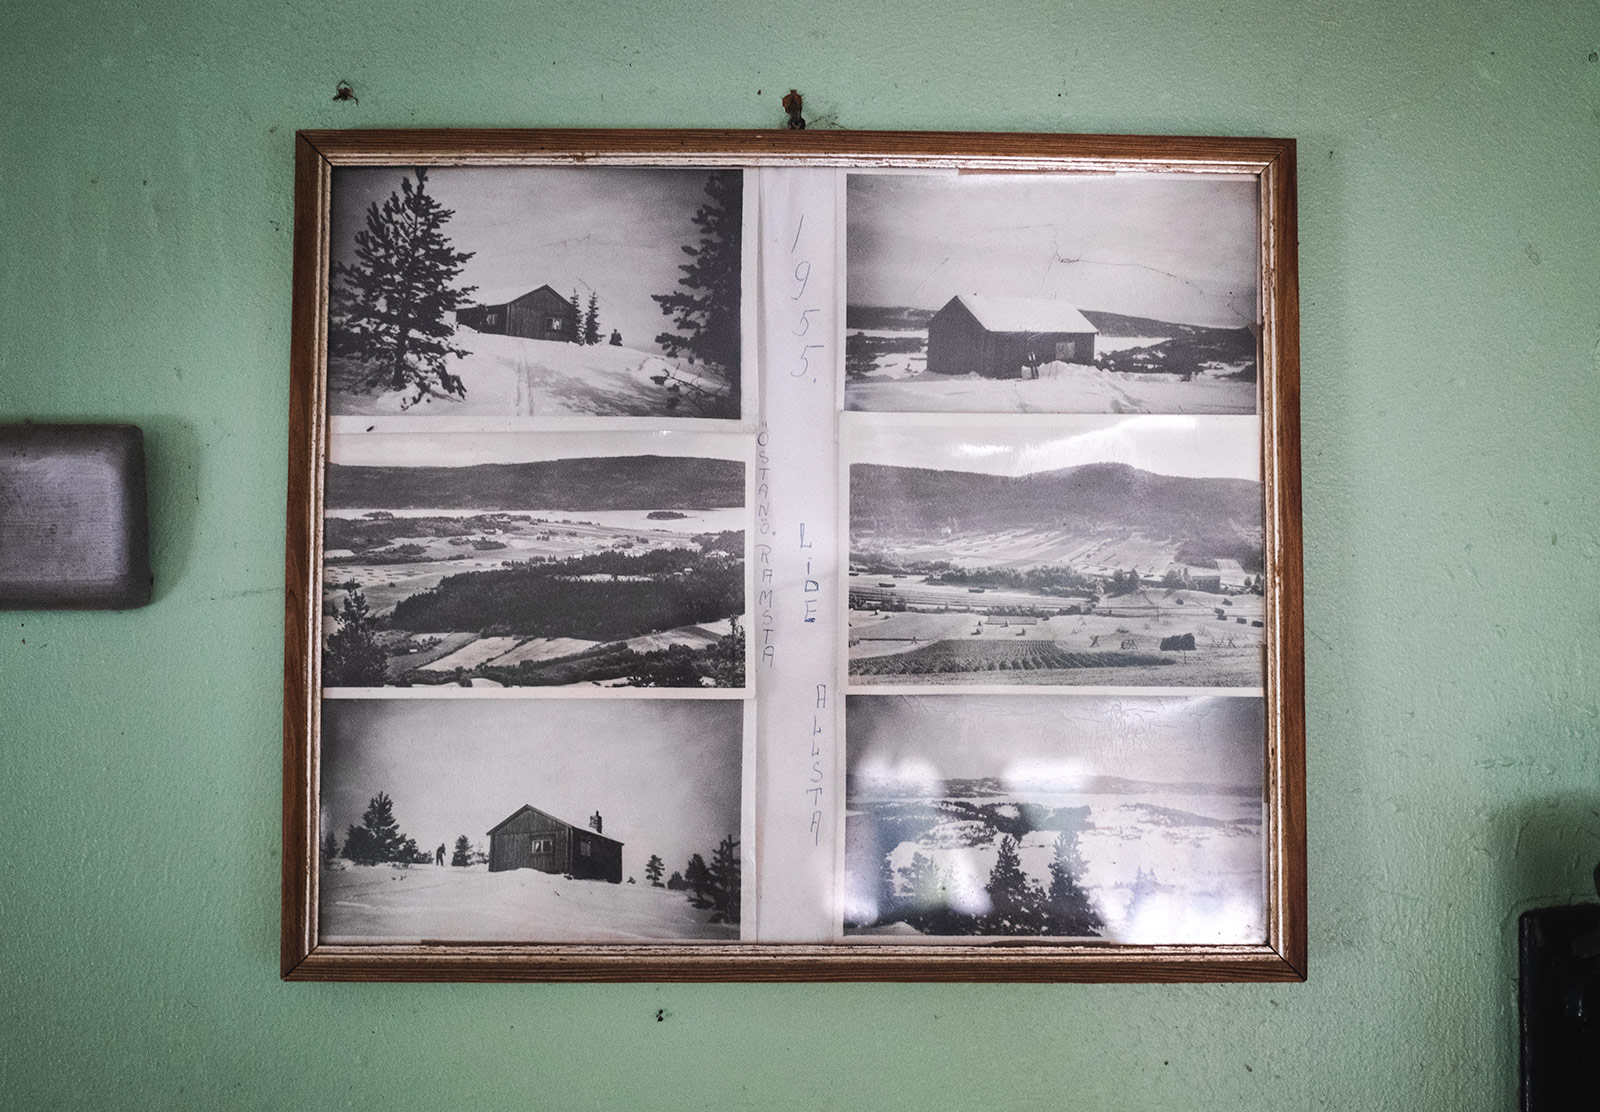 Photos in a frame